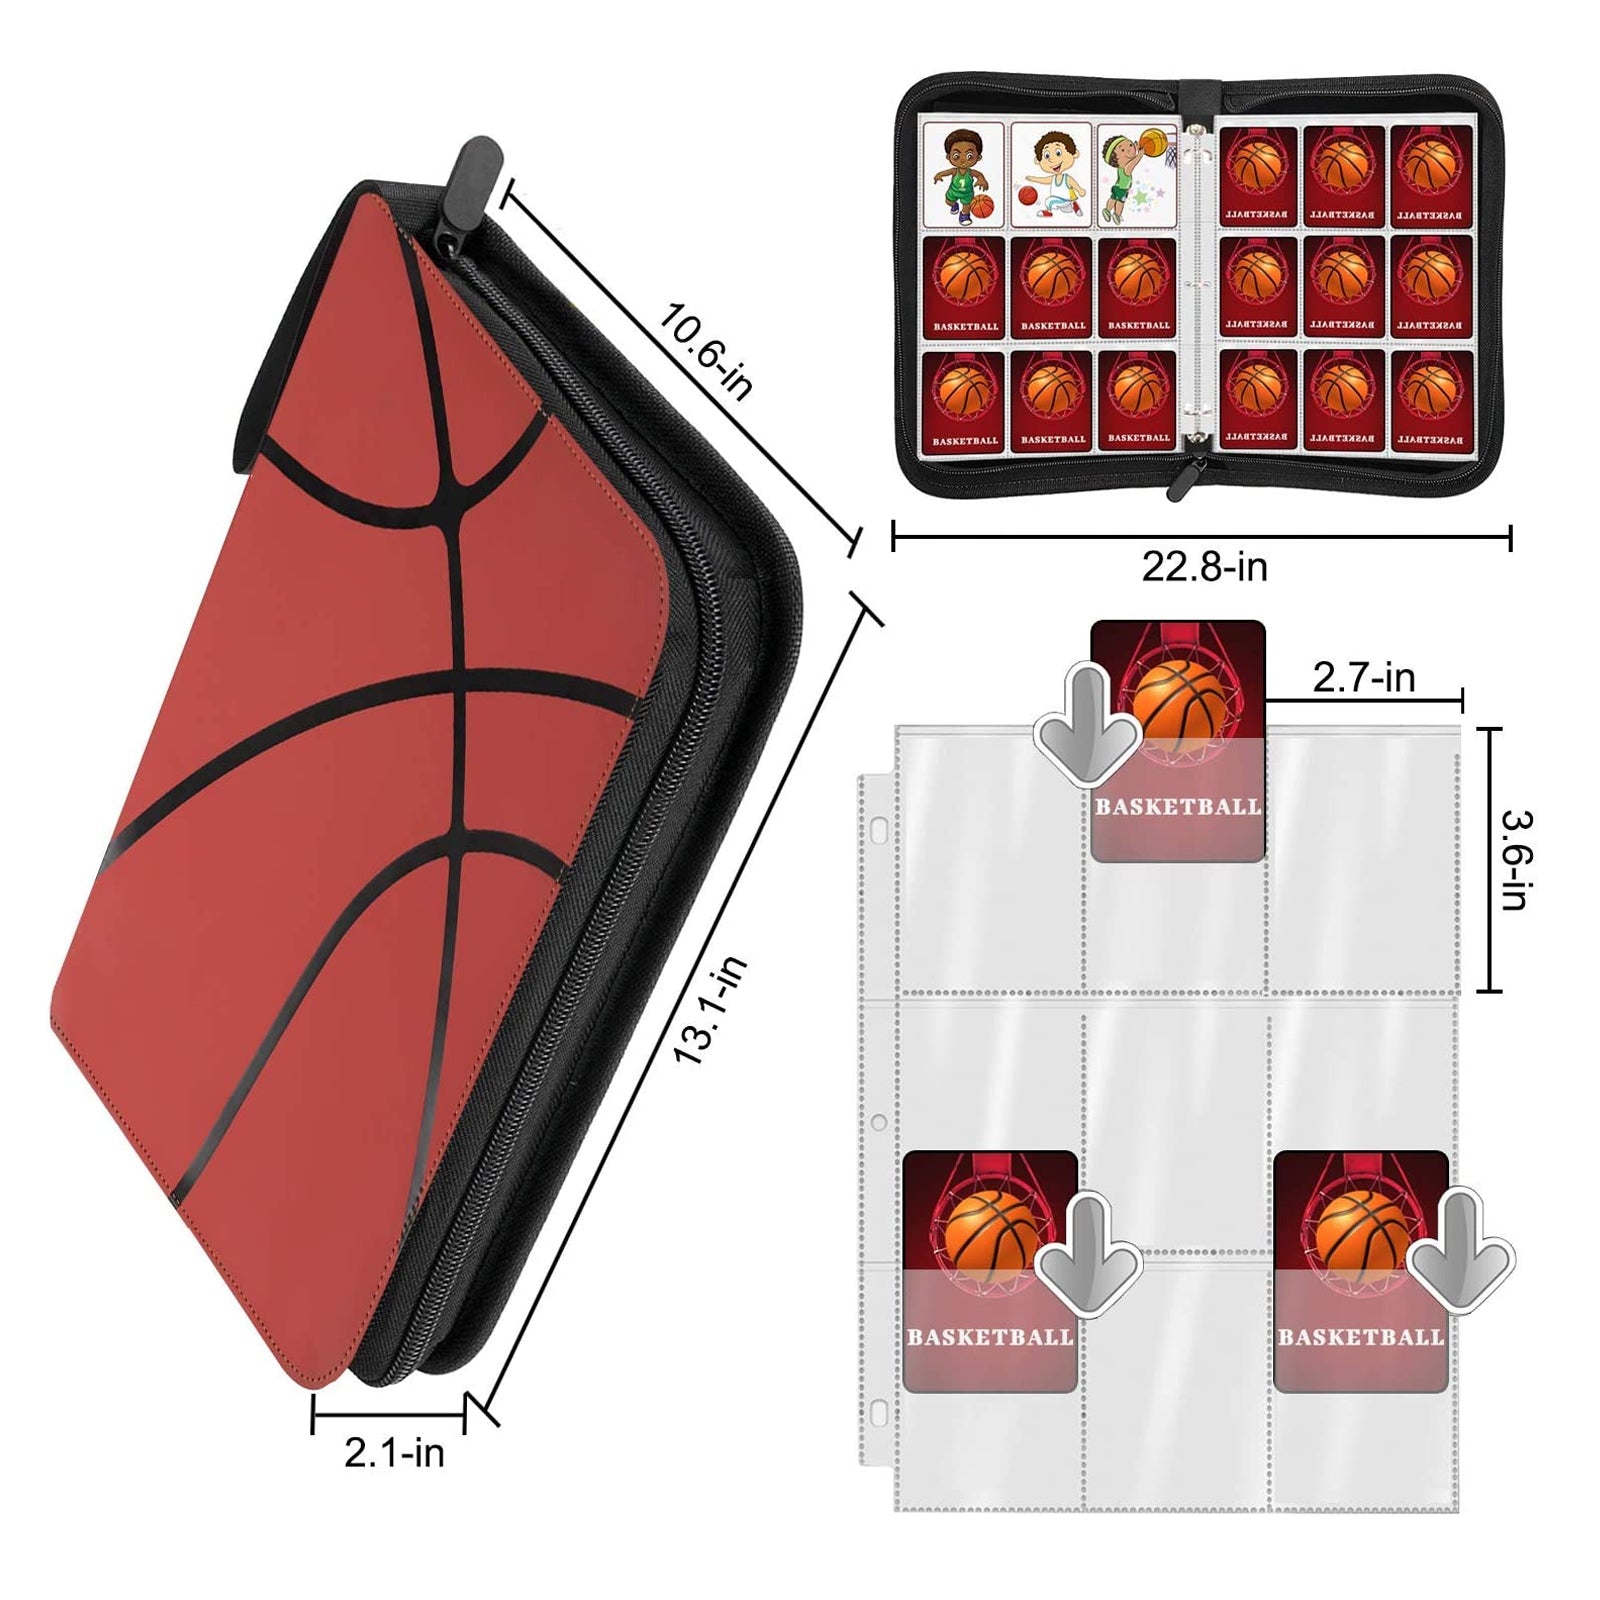 Basketball Bag 2.1 